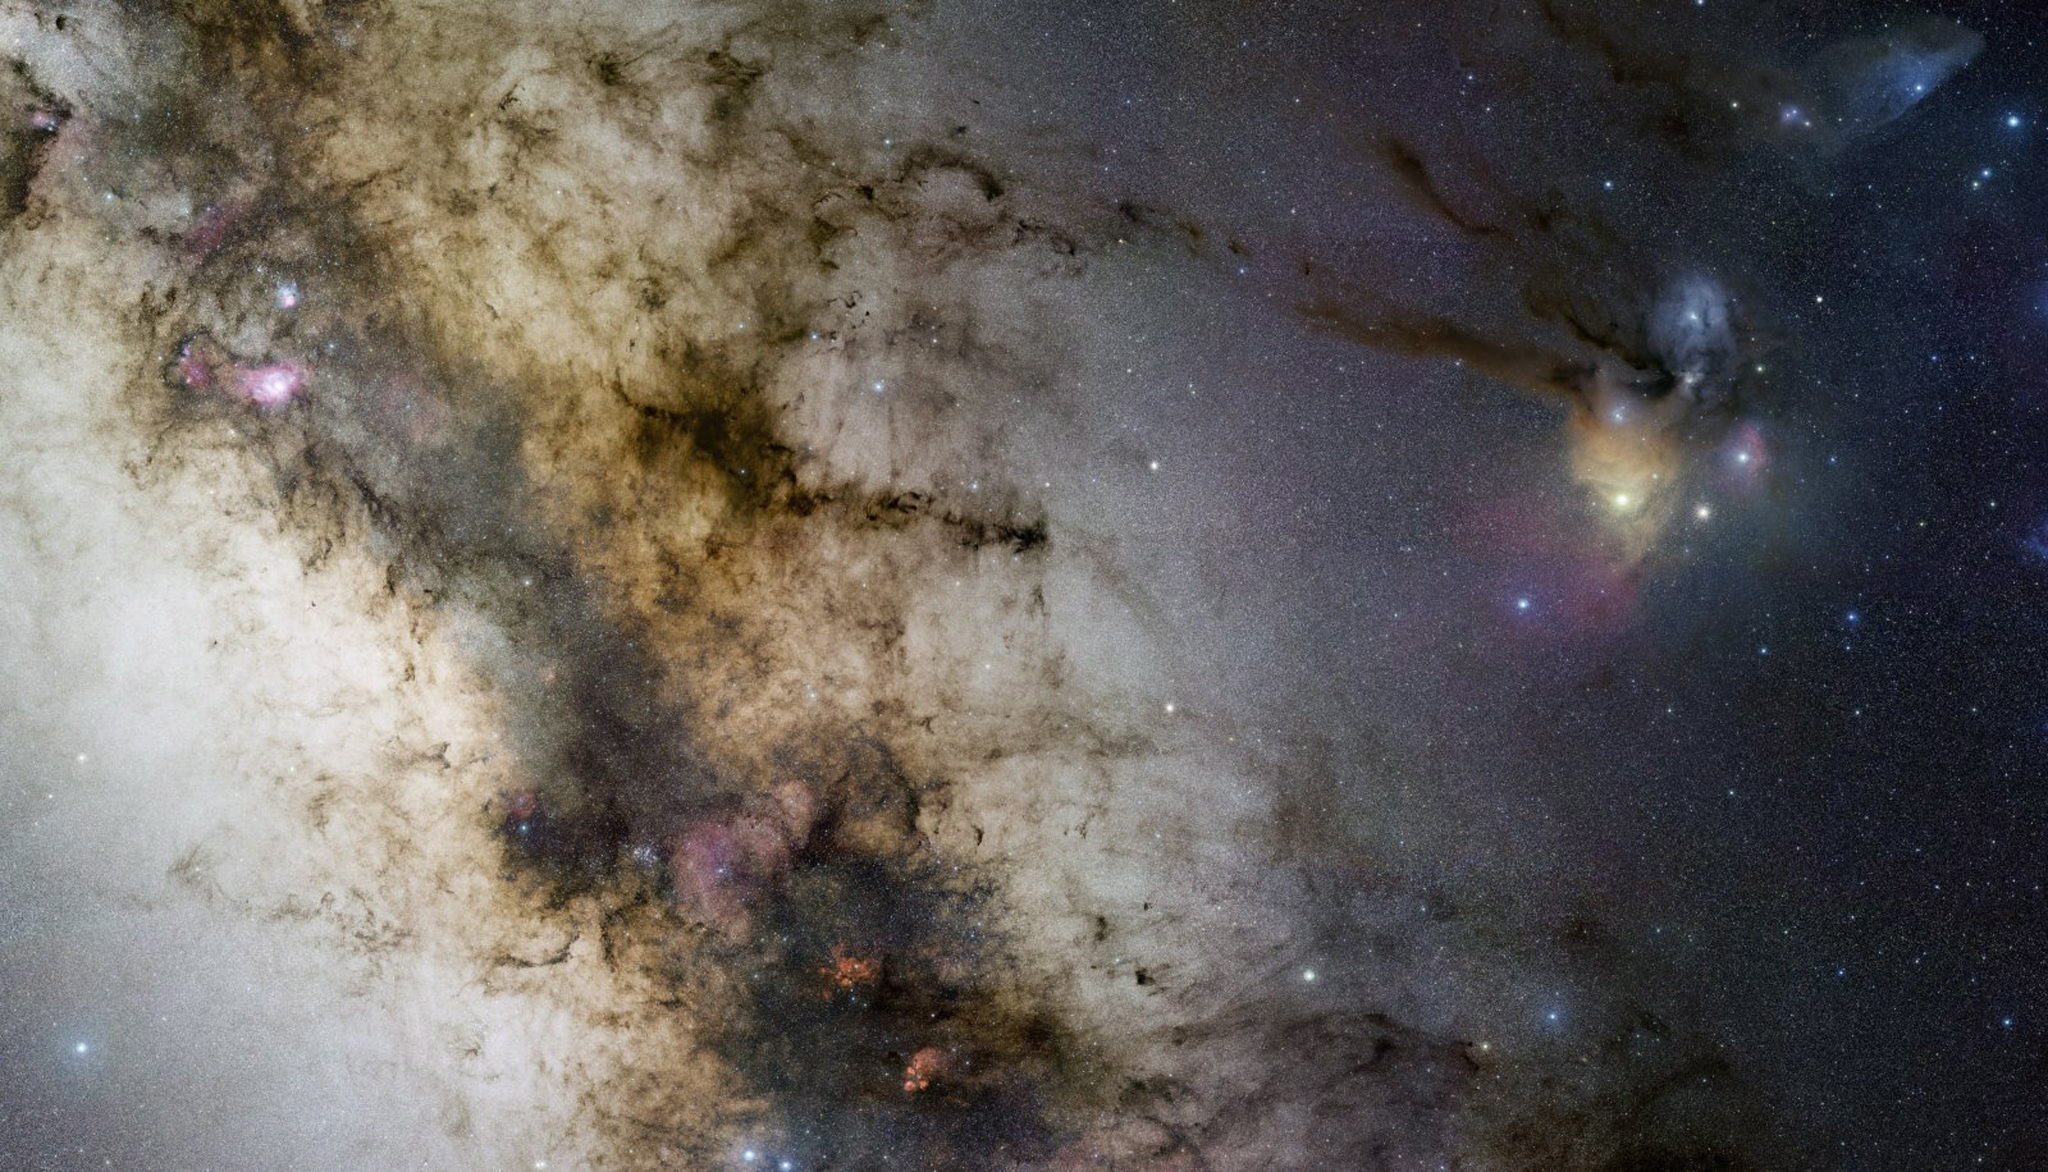 Necropoli stellari, individuato un “mondo sotterraneo galattico” dove si nascondono buchi neri e stelle di neutroni – Lo studio